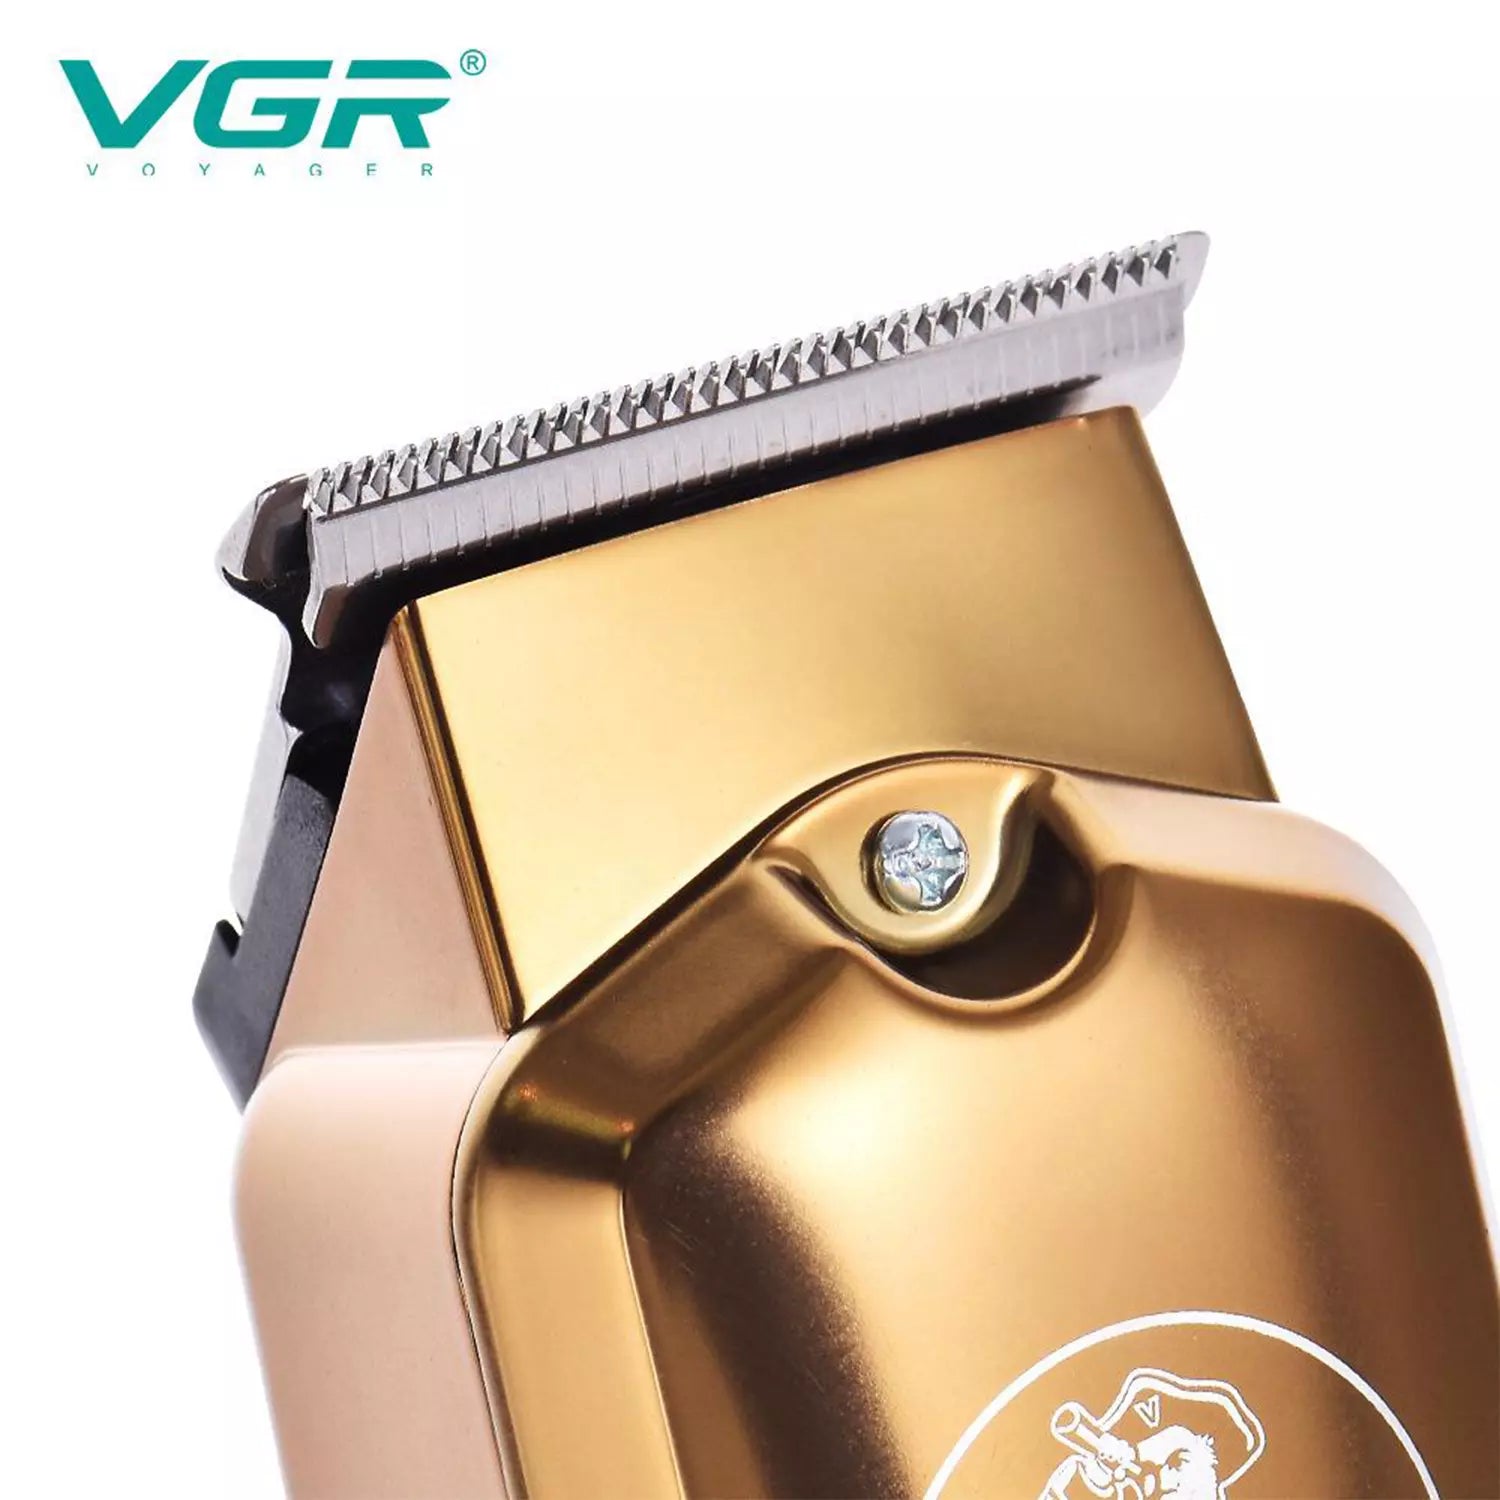 VGR V-927 Hair Trimmer For Men